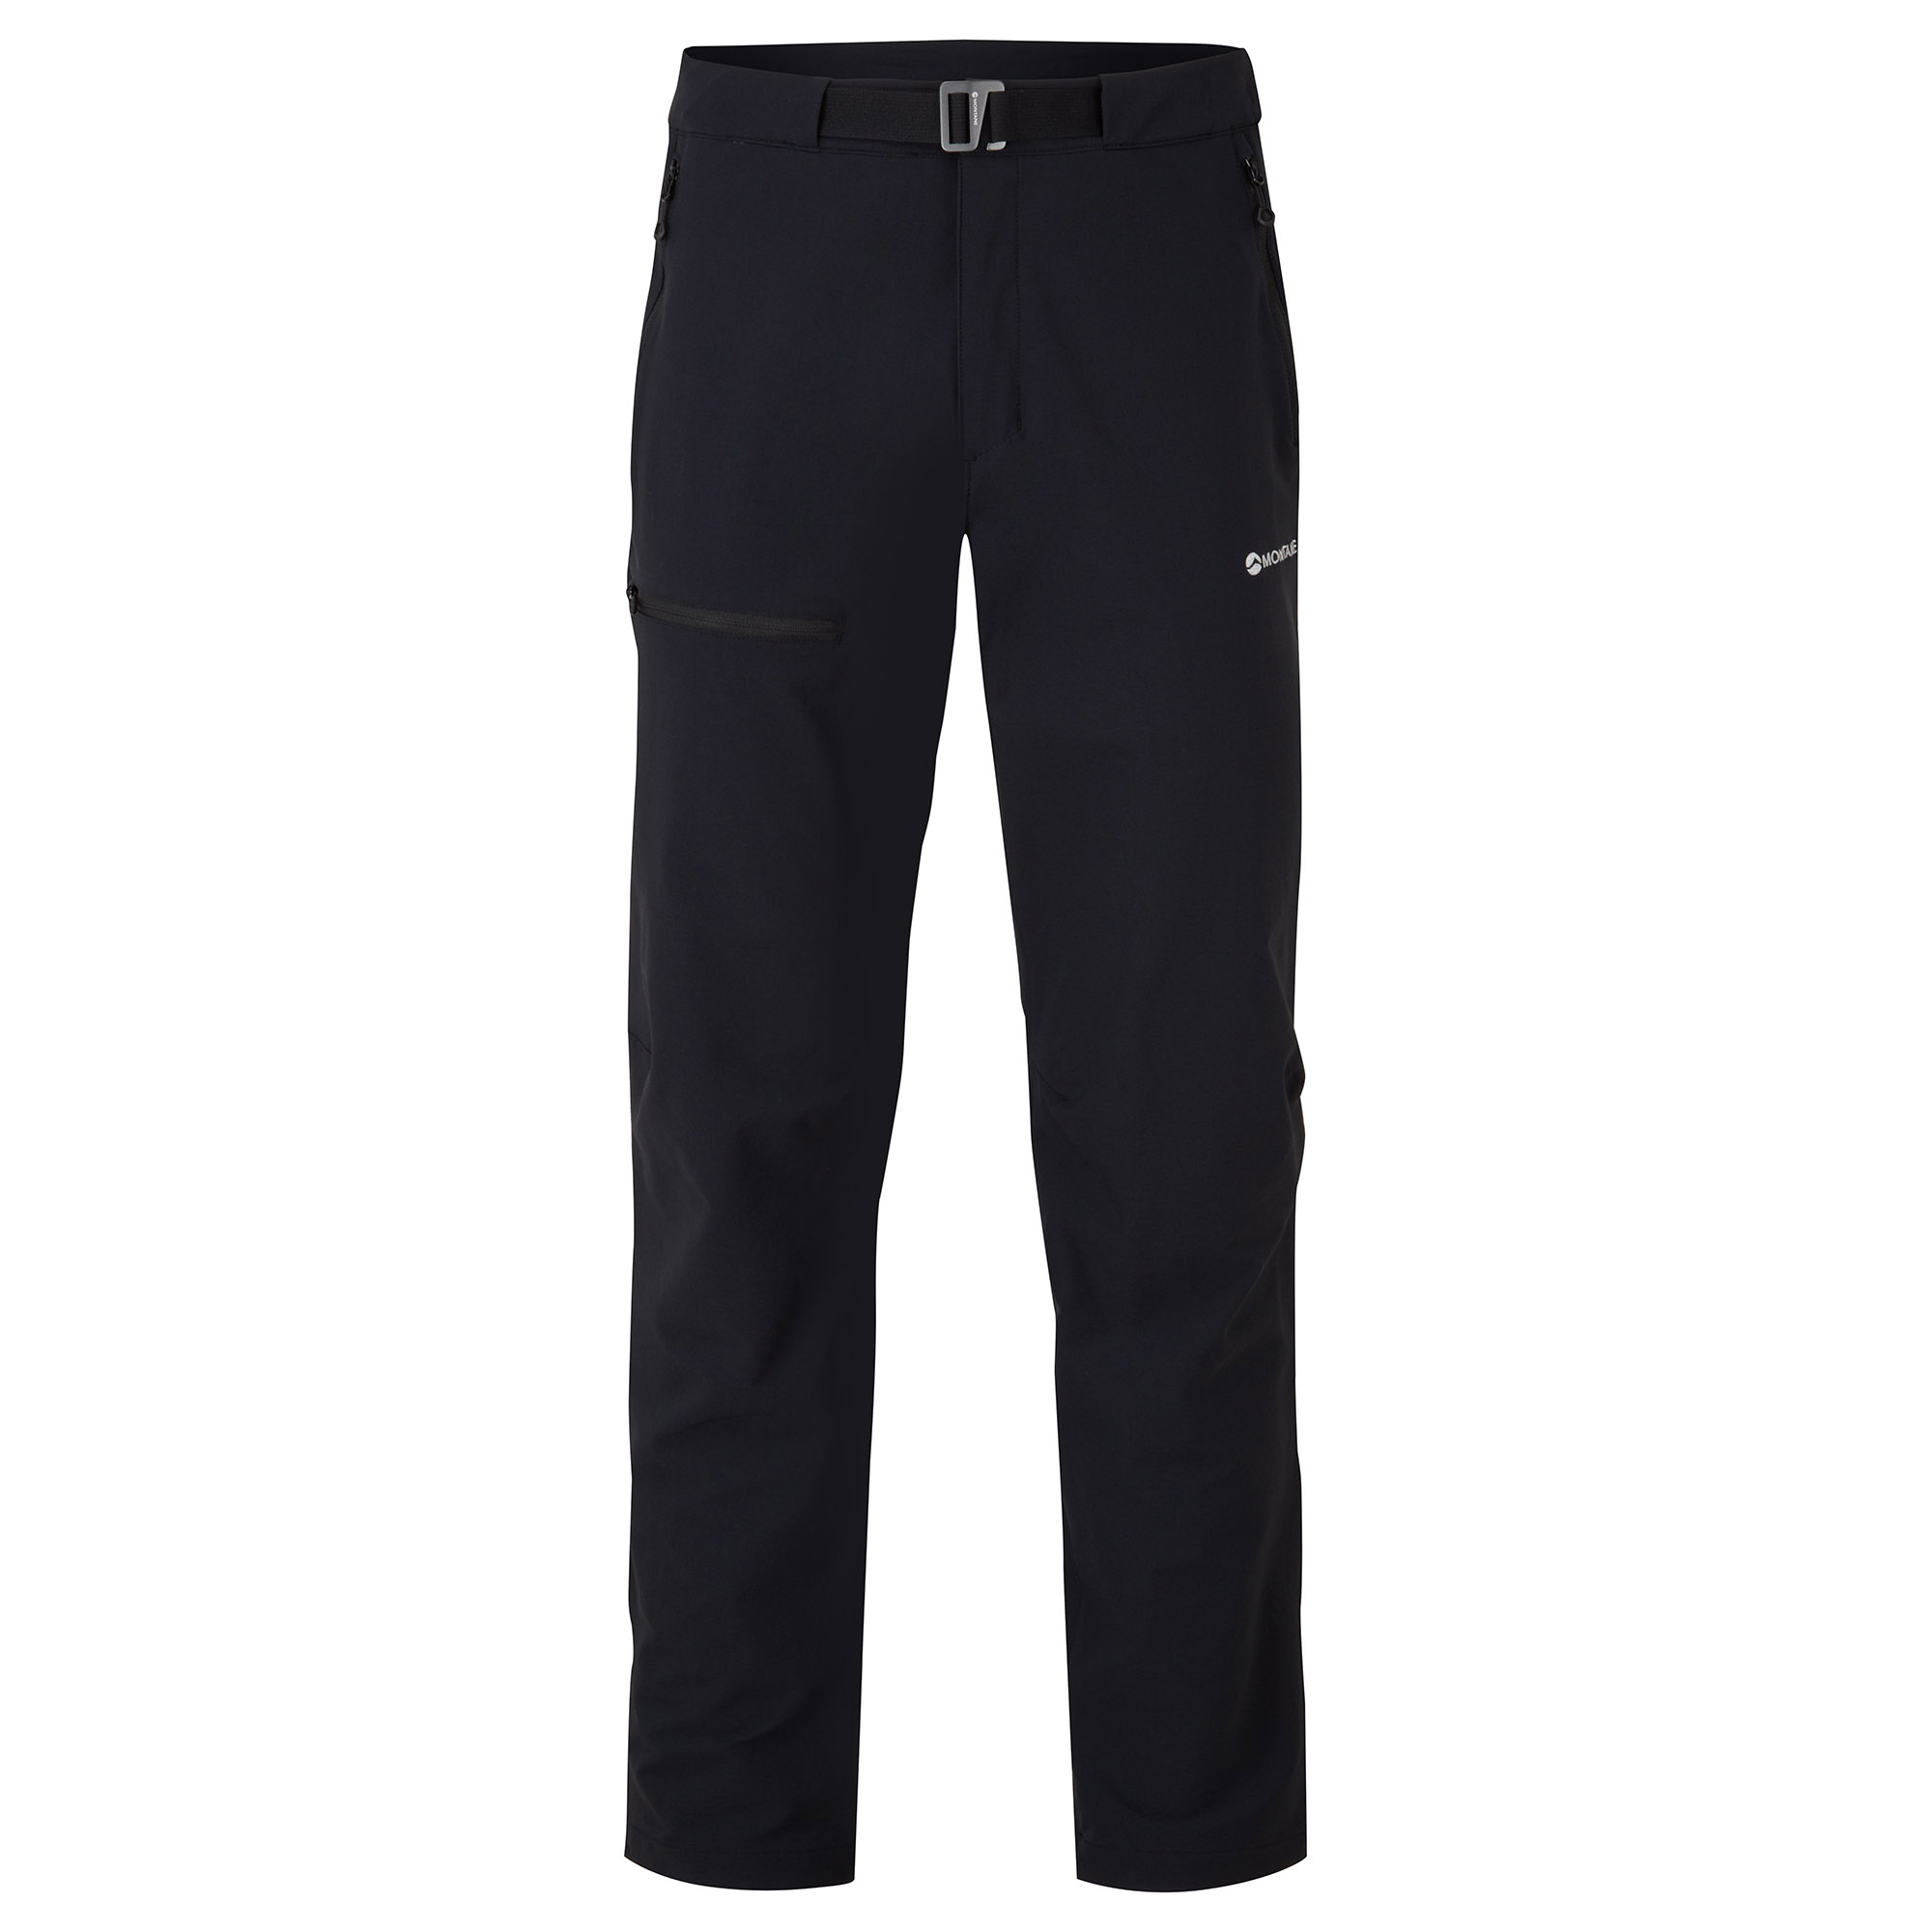 Montane pánské softshellové kalhoty Tenacity Pants - Prodloužené Nohavice Barva: black, Velikost: 32